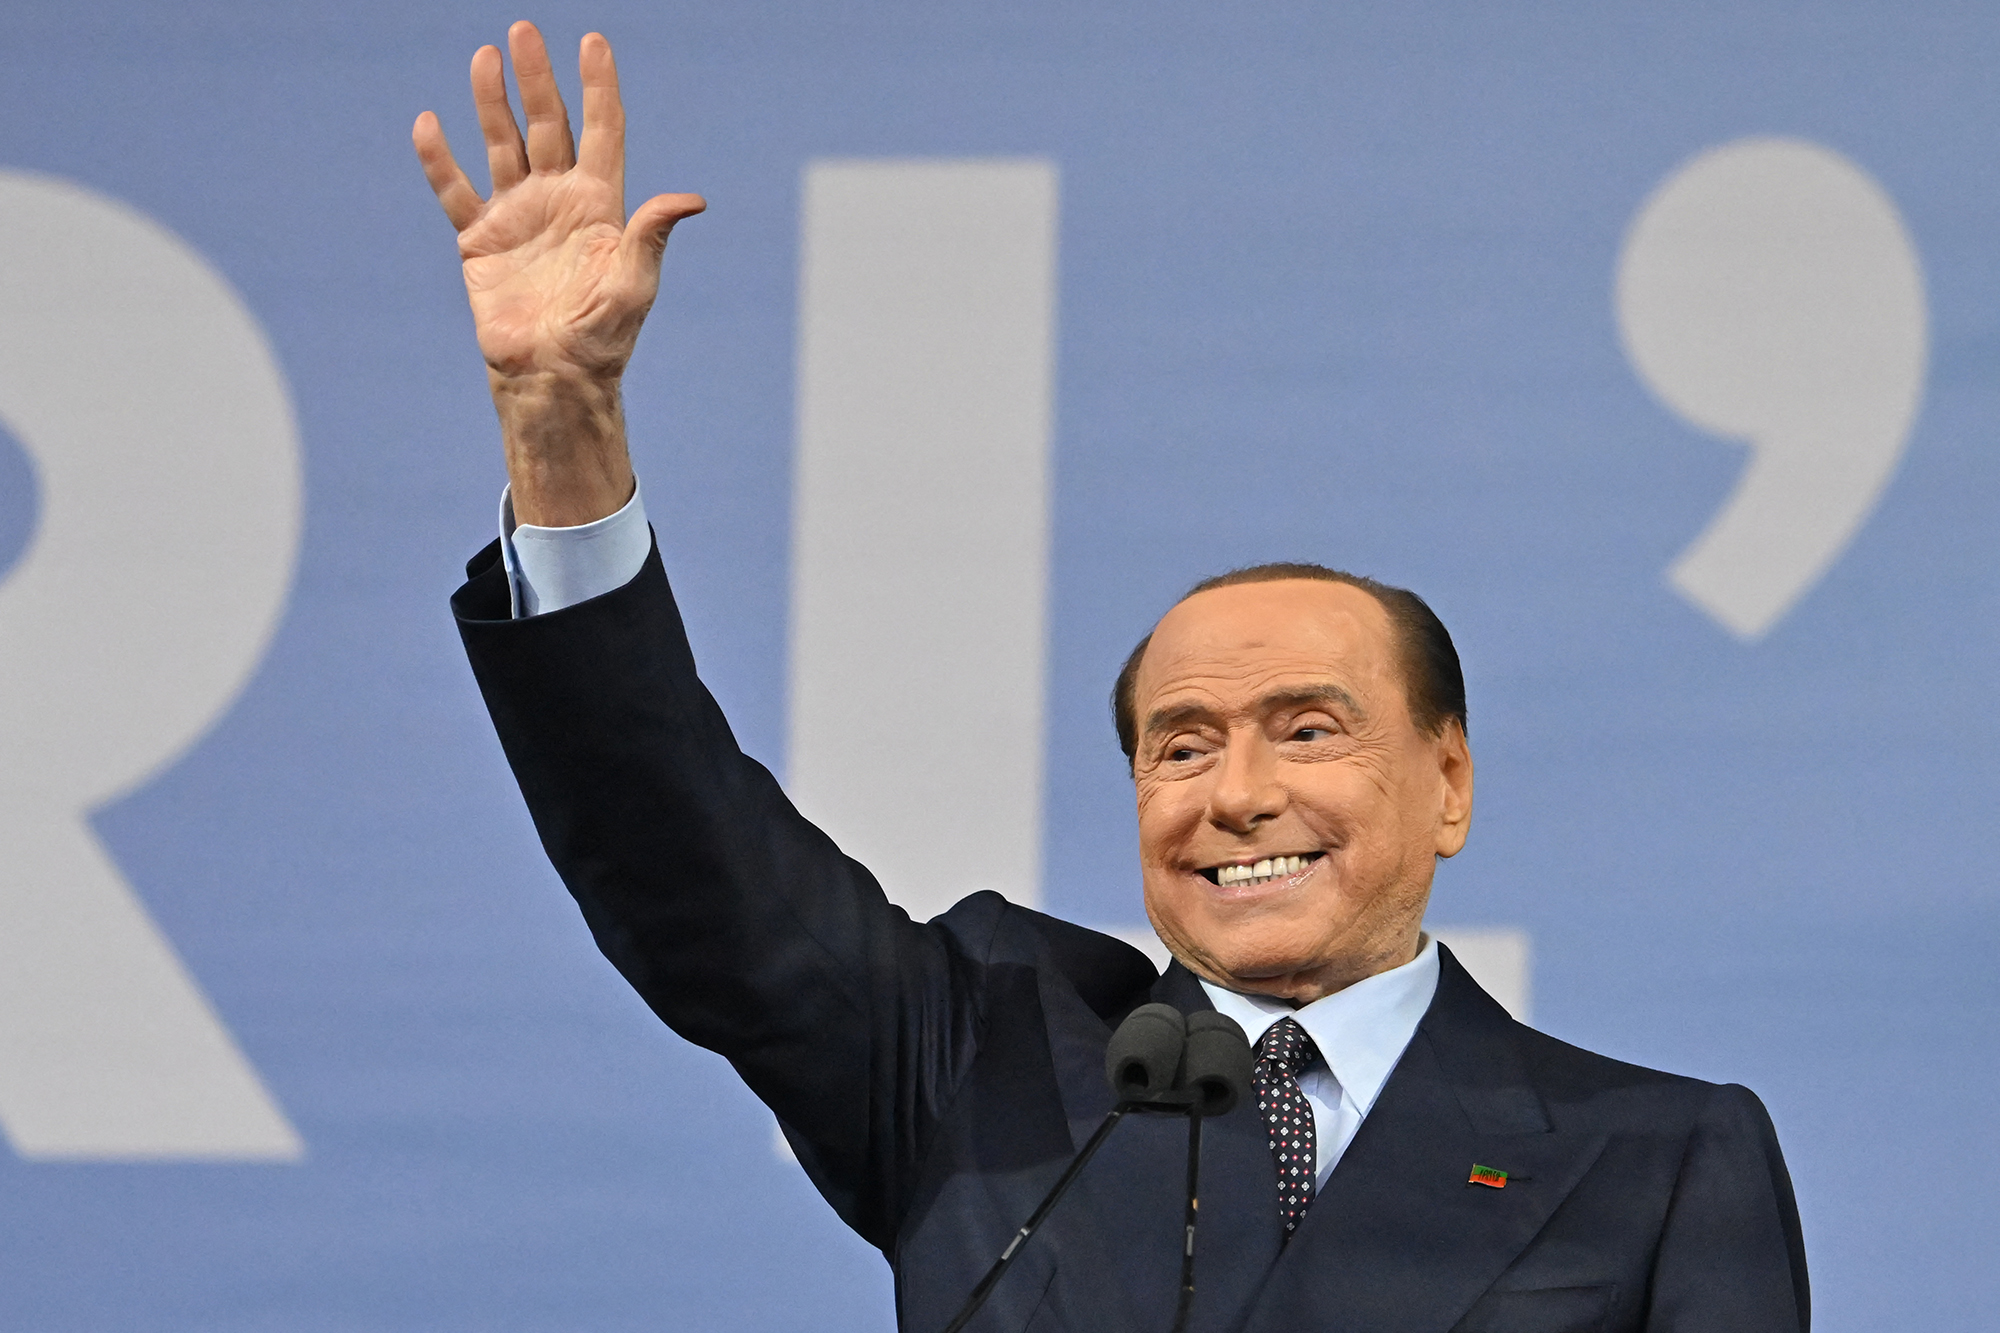 Silvio Berlusconi bei einer Wahlveranstaltung am Donnerstag